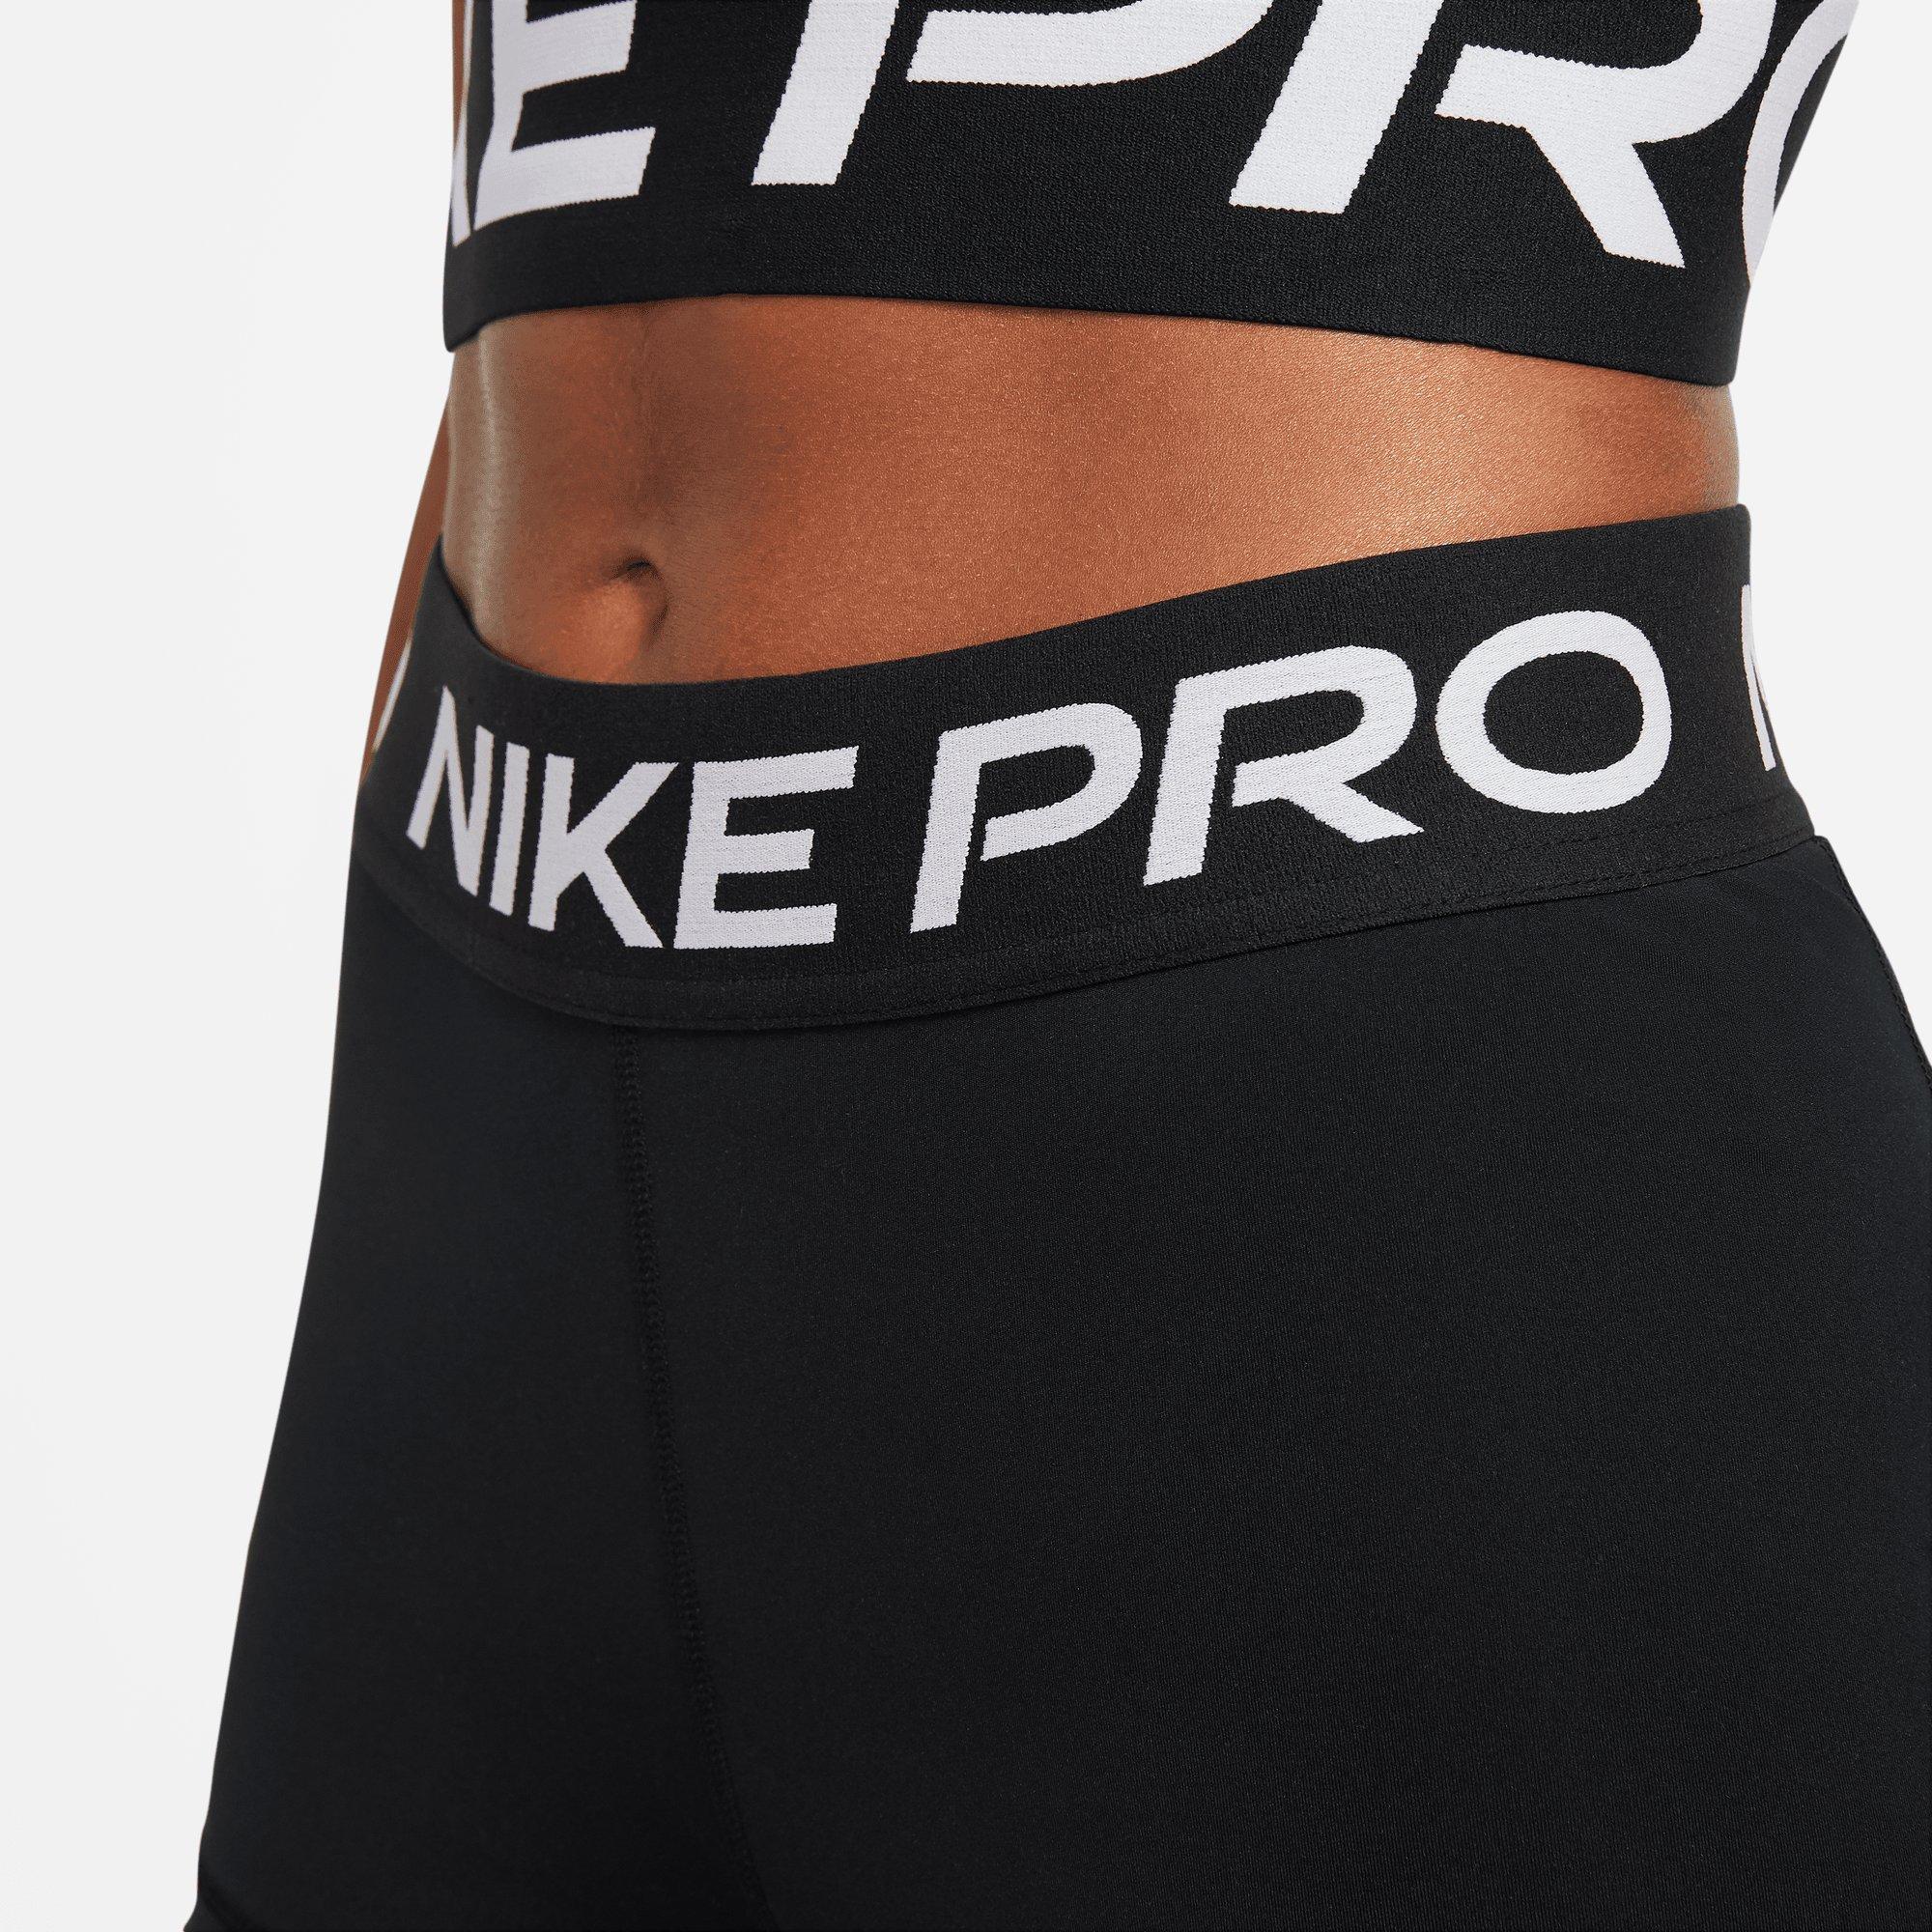 Nike Women's Pro 3 Training Short (White/Black/Black, Small